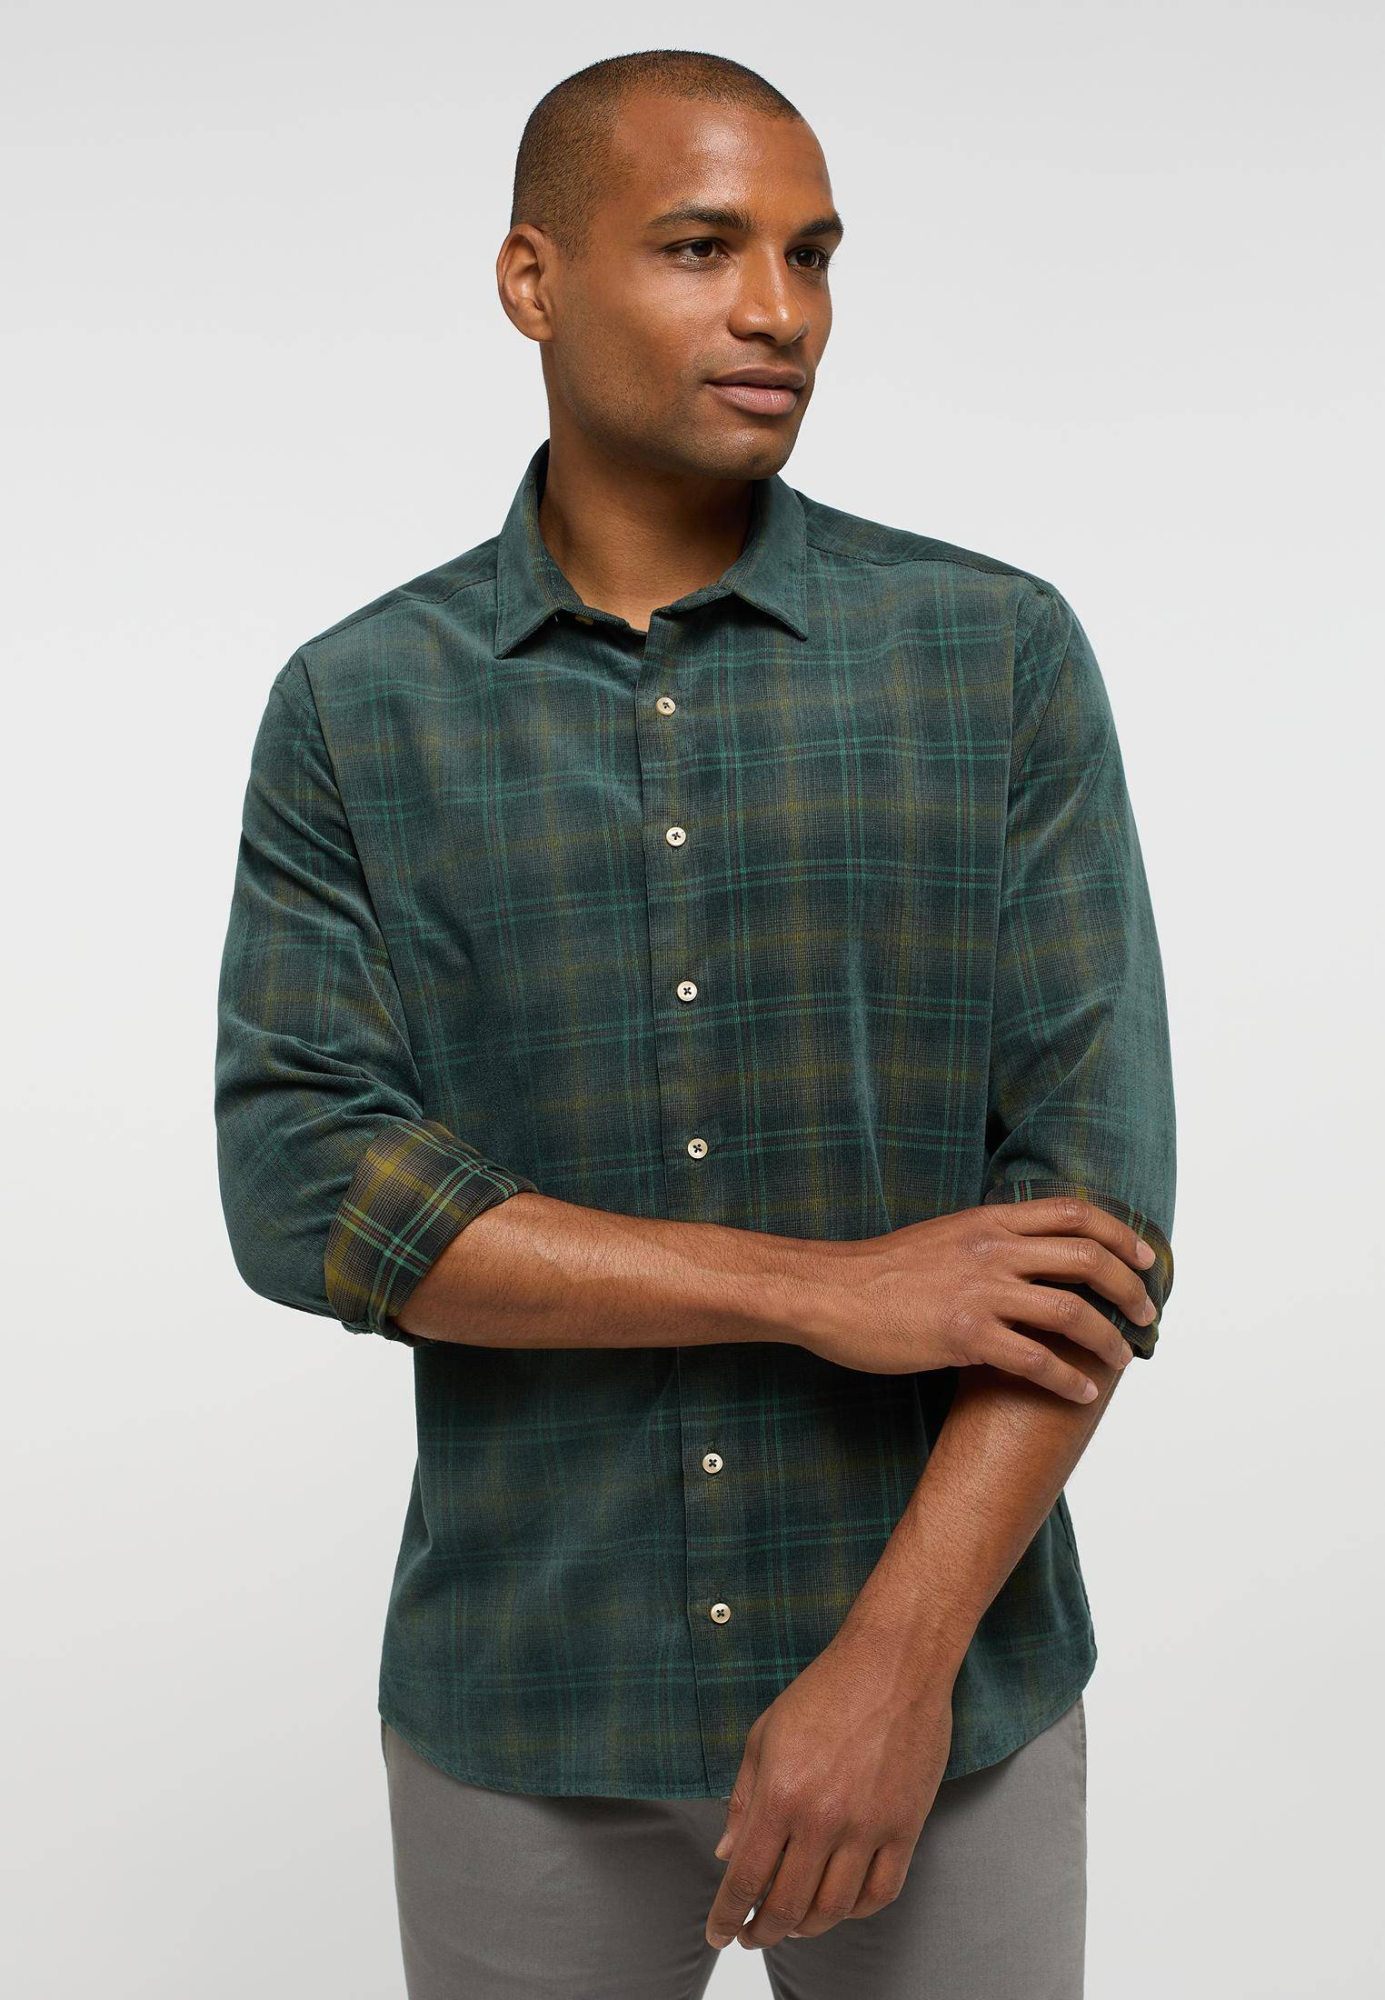 Мужская рубашка ETERNA, зеленая, цвет зеленый, размер 50 - фото 1